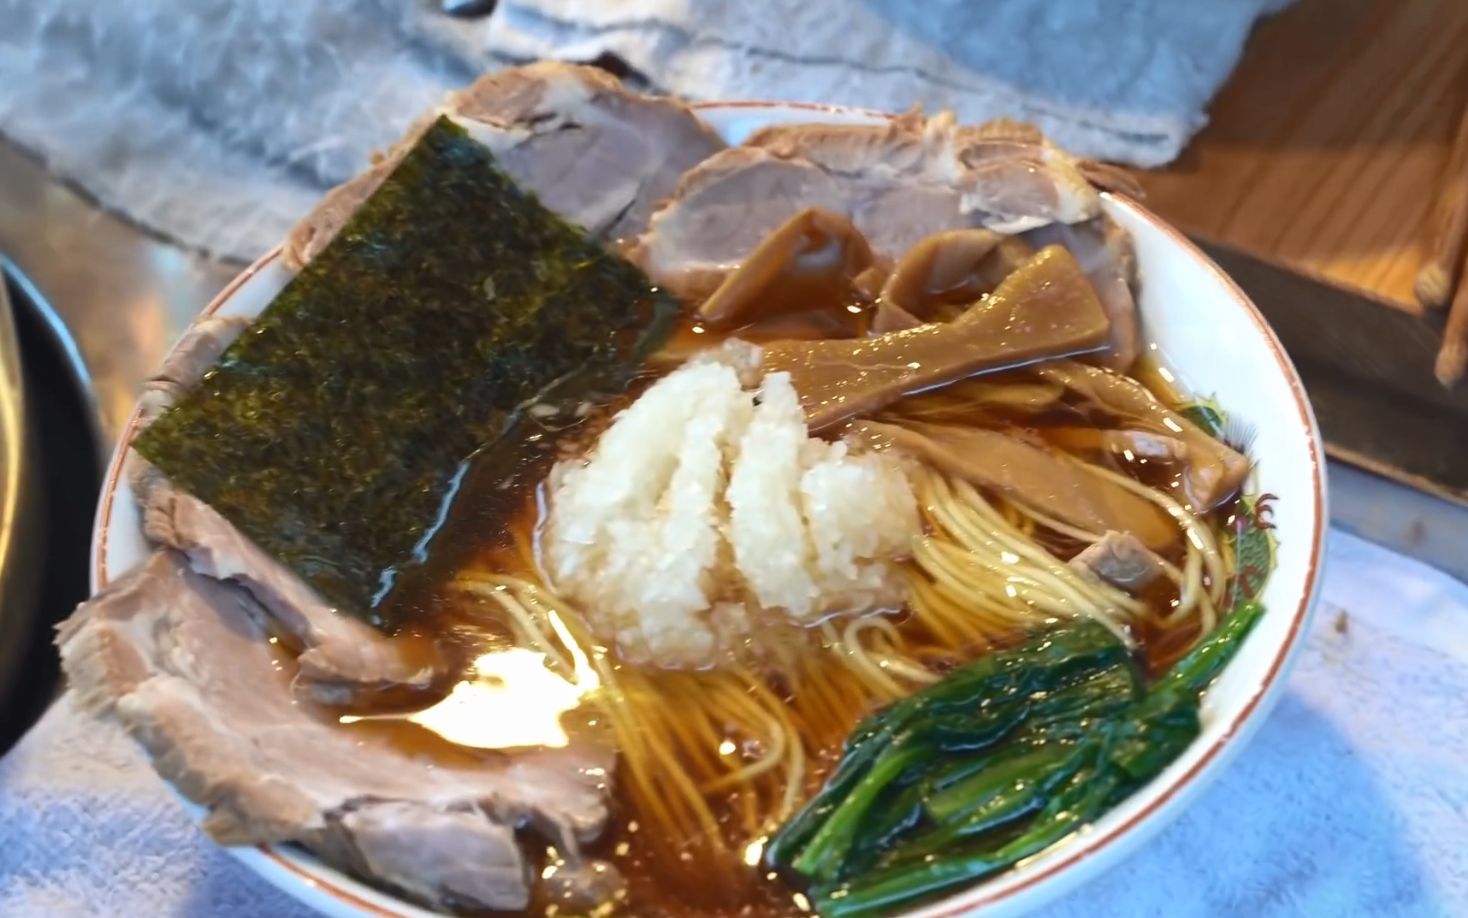 日本一位木匠的顶级拉面摊 - 日本街头小吃